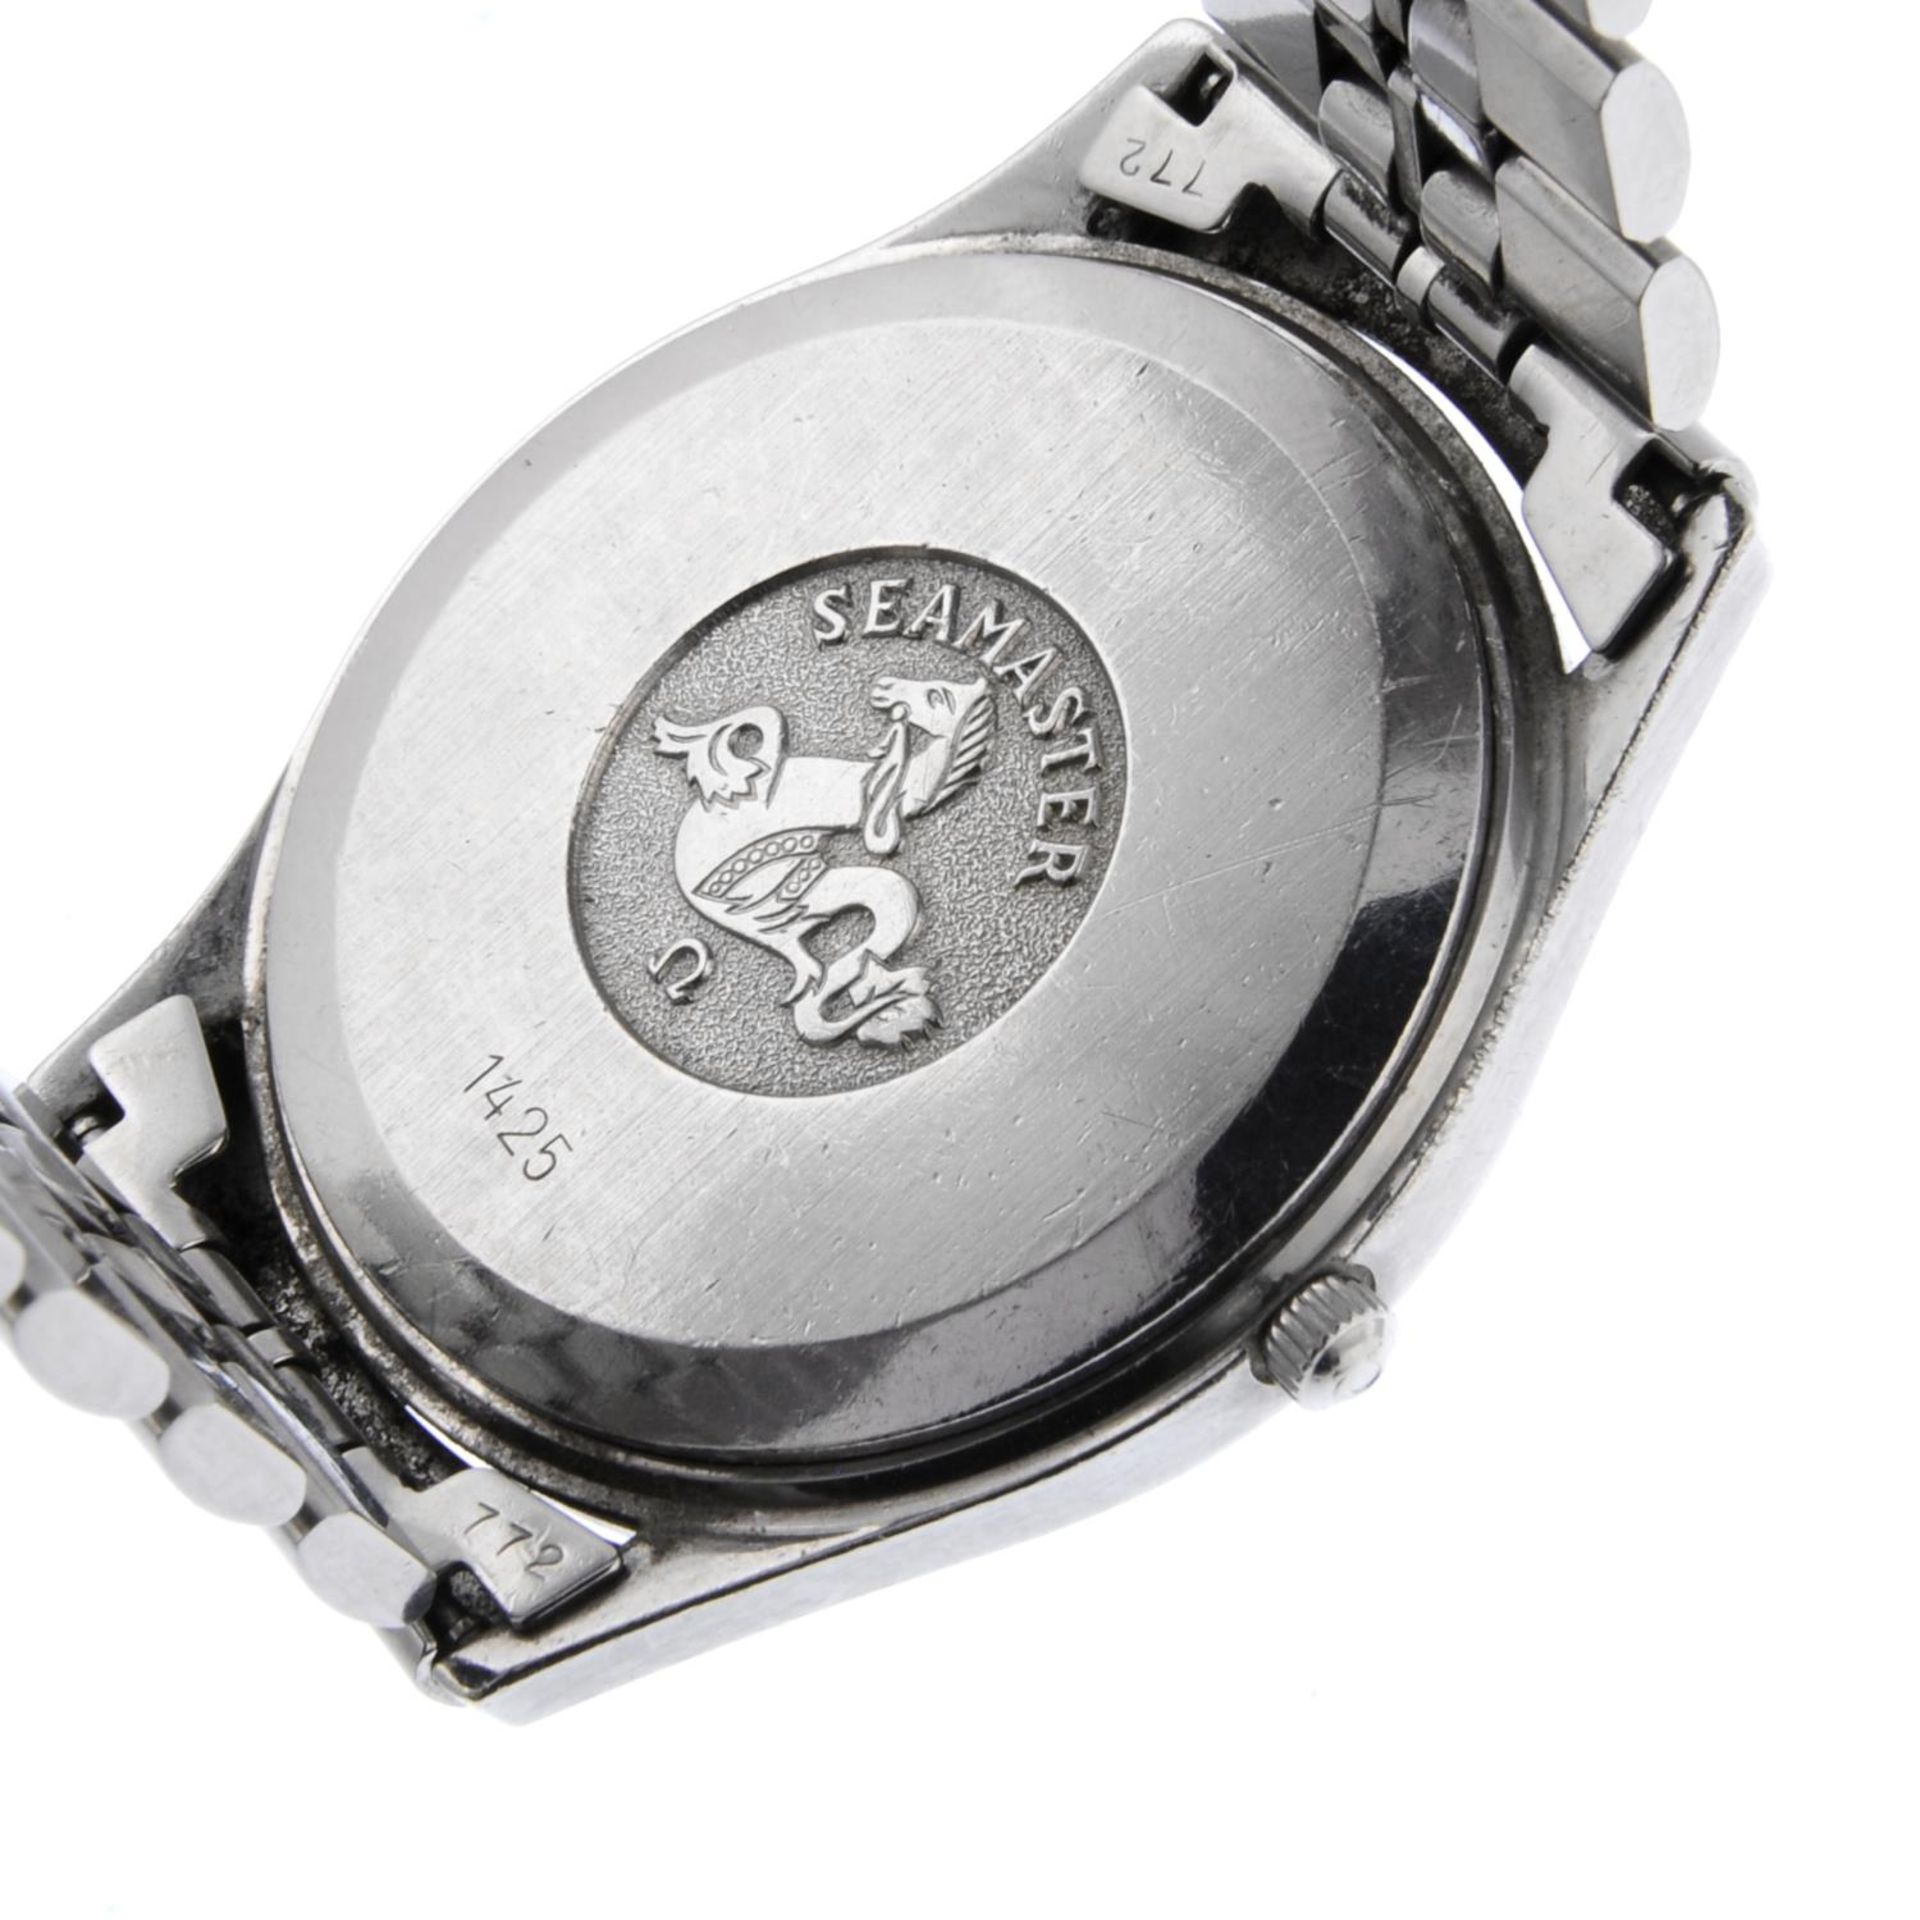 OMEGA - a gentleman's Seamaster bracelet watch. - Bild 4 aus 4